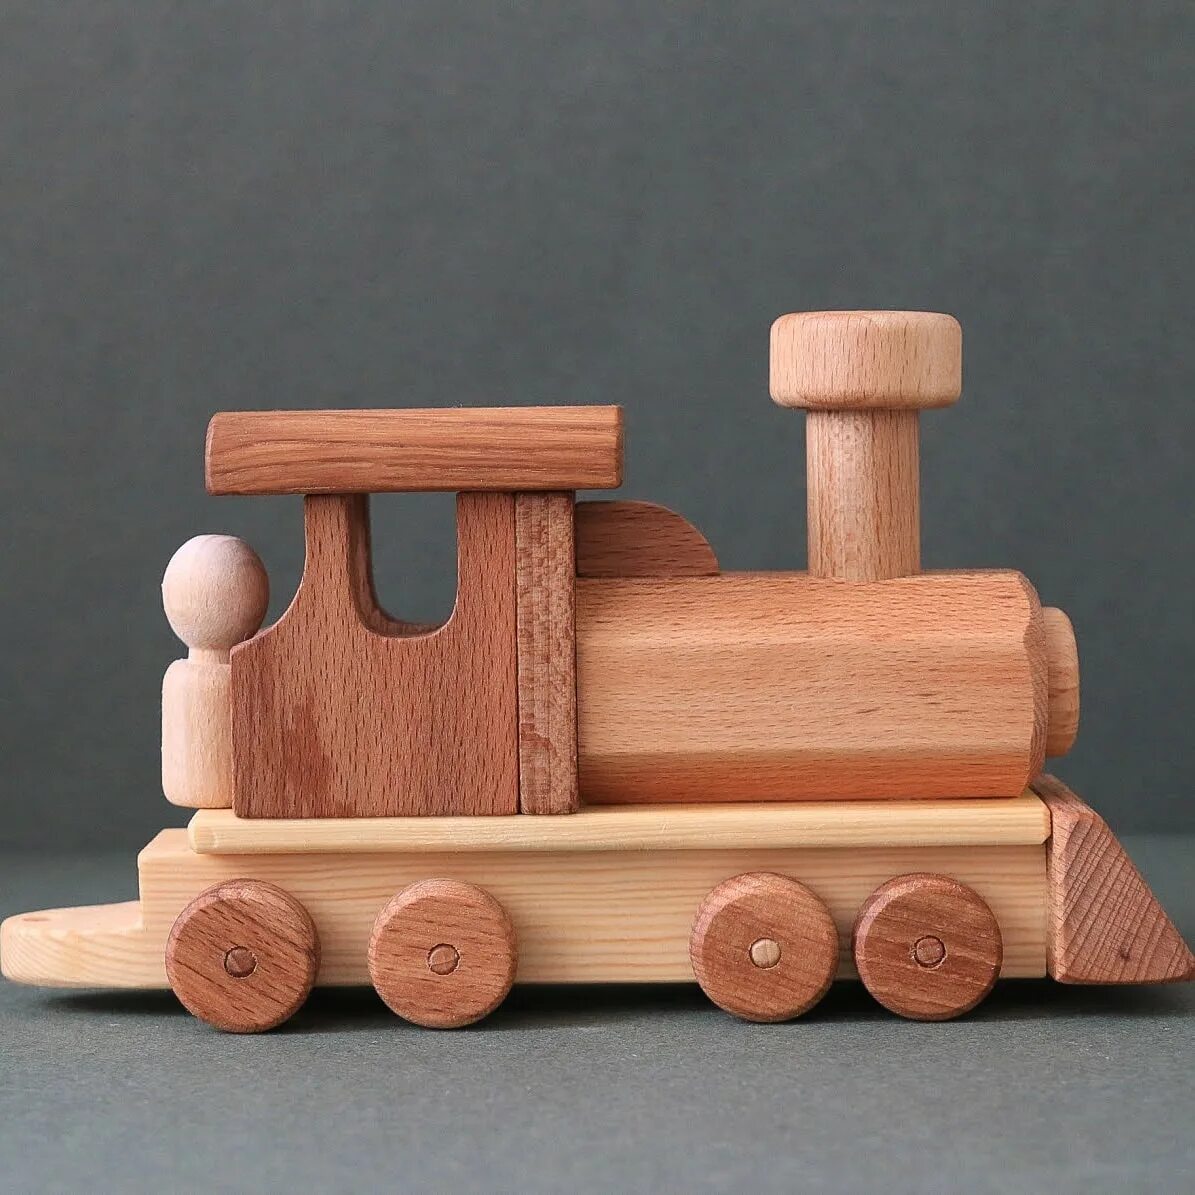 Деревянная игрушка где. Деревянные игрушки. Деревянный паровозик. Игрушки из дерева. Игрушки из древесины.